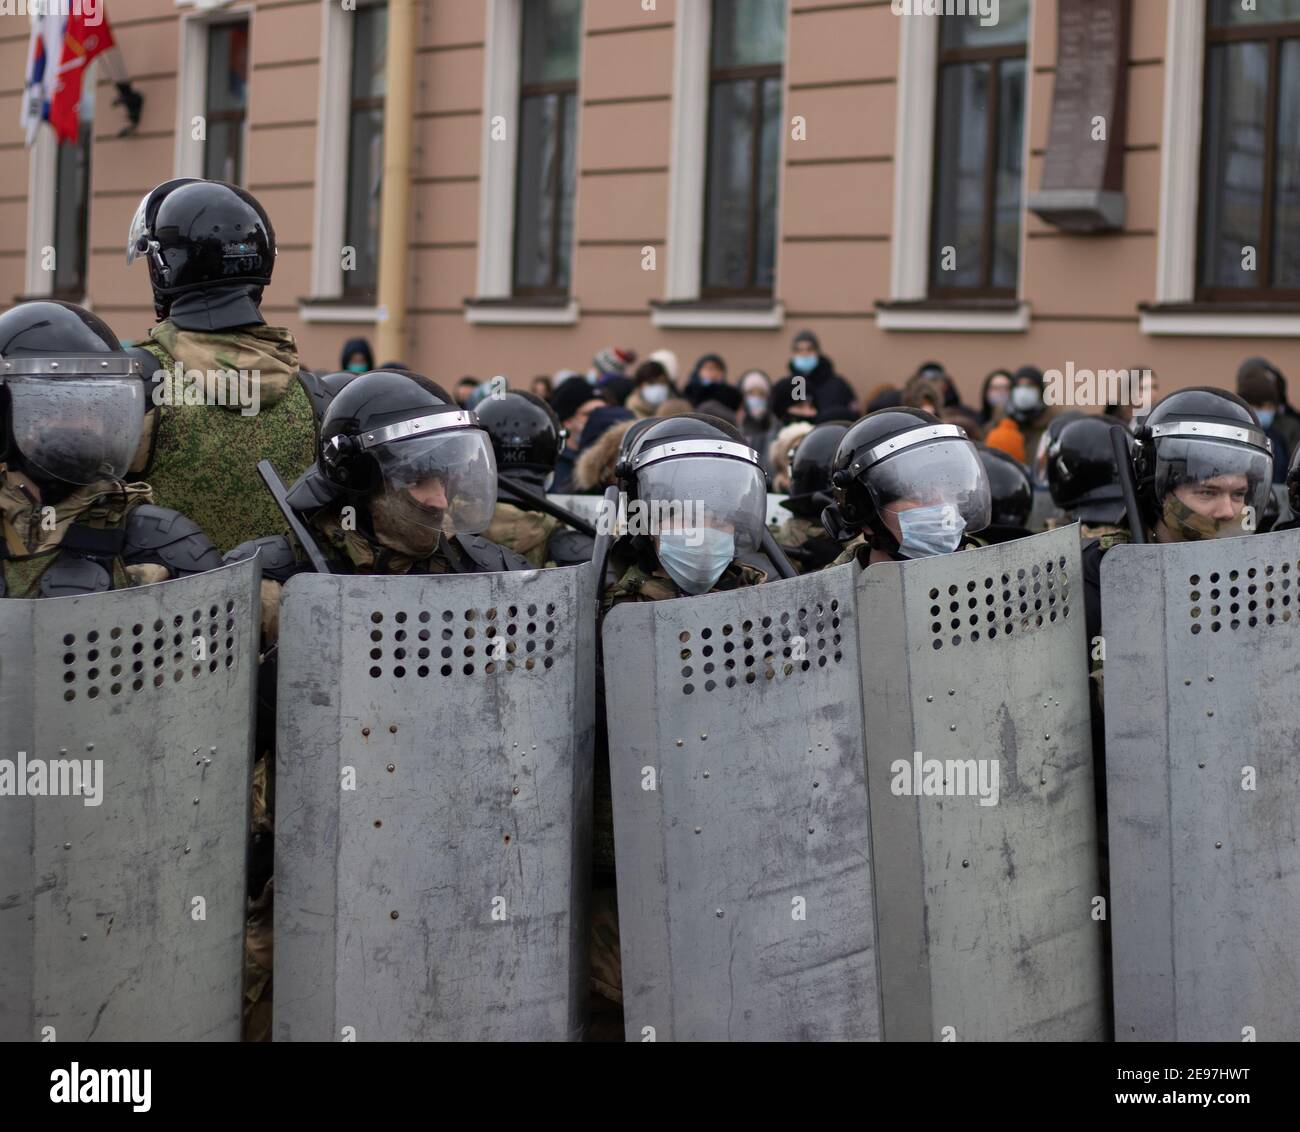 San Pietroburgo, Russia - 31 gennaio 2021: Speciale squadra di polizia in rivolta per strada, editoriale illustrativo Foto Stock